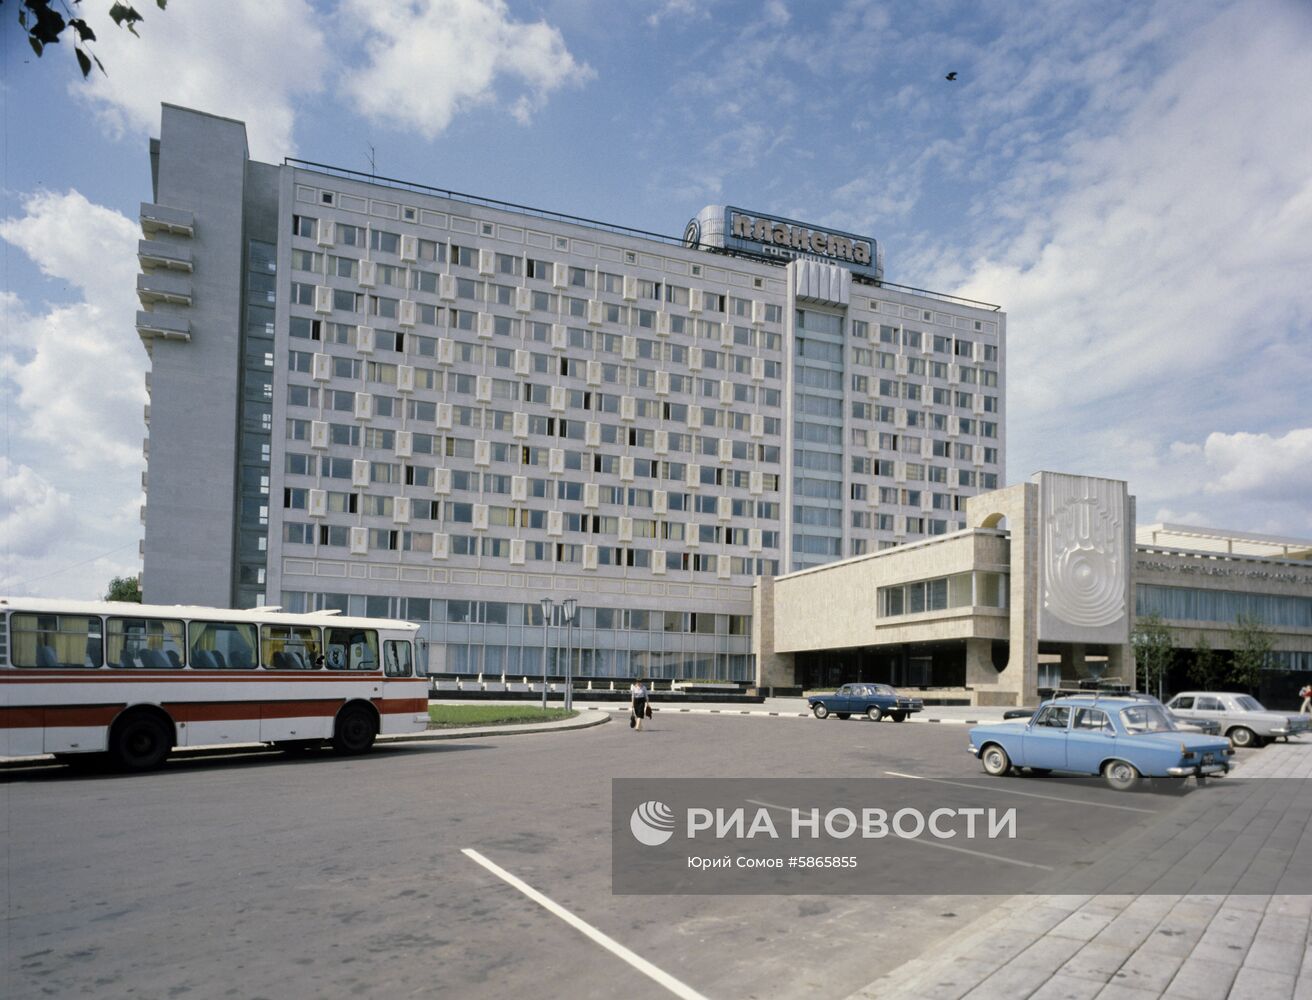 Гостиница "Планета" в Минске